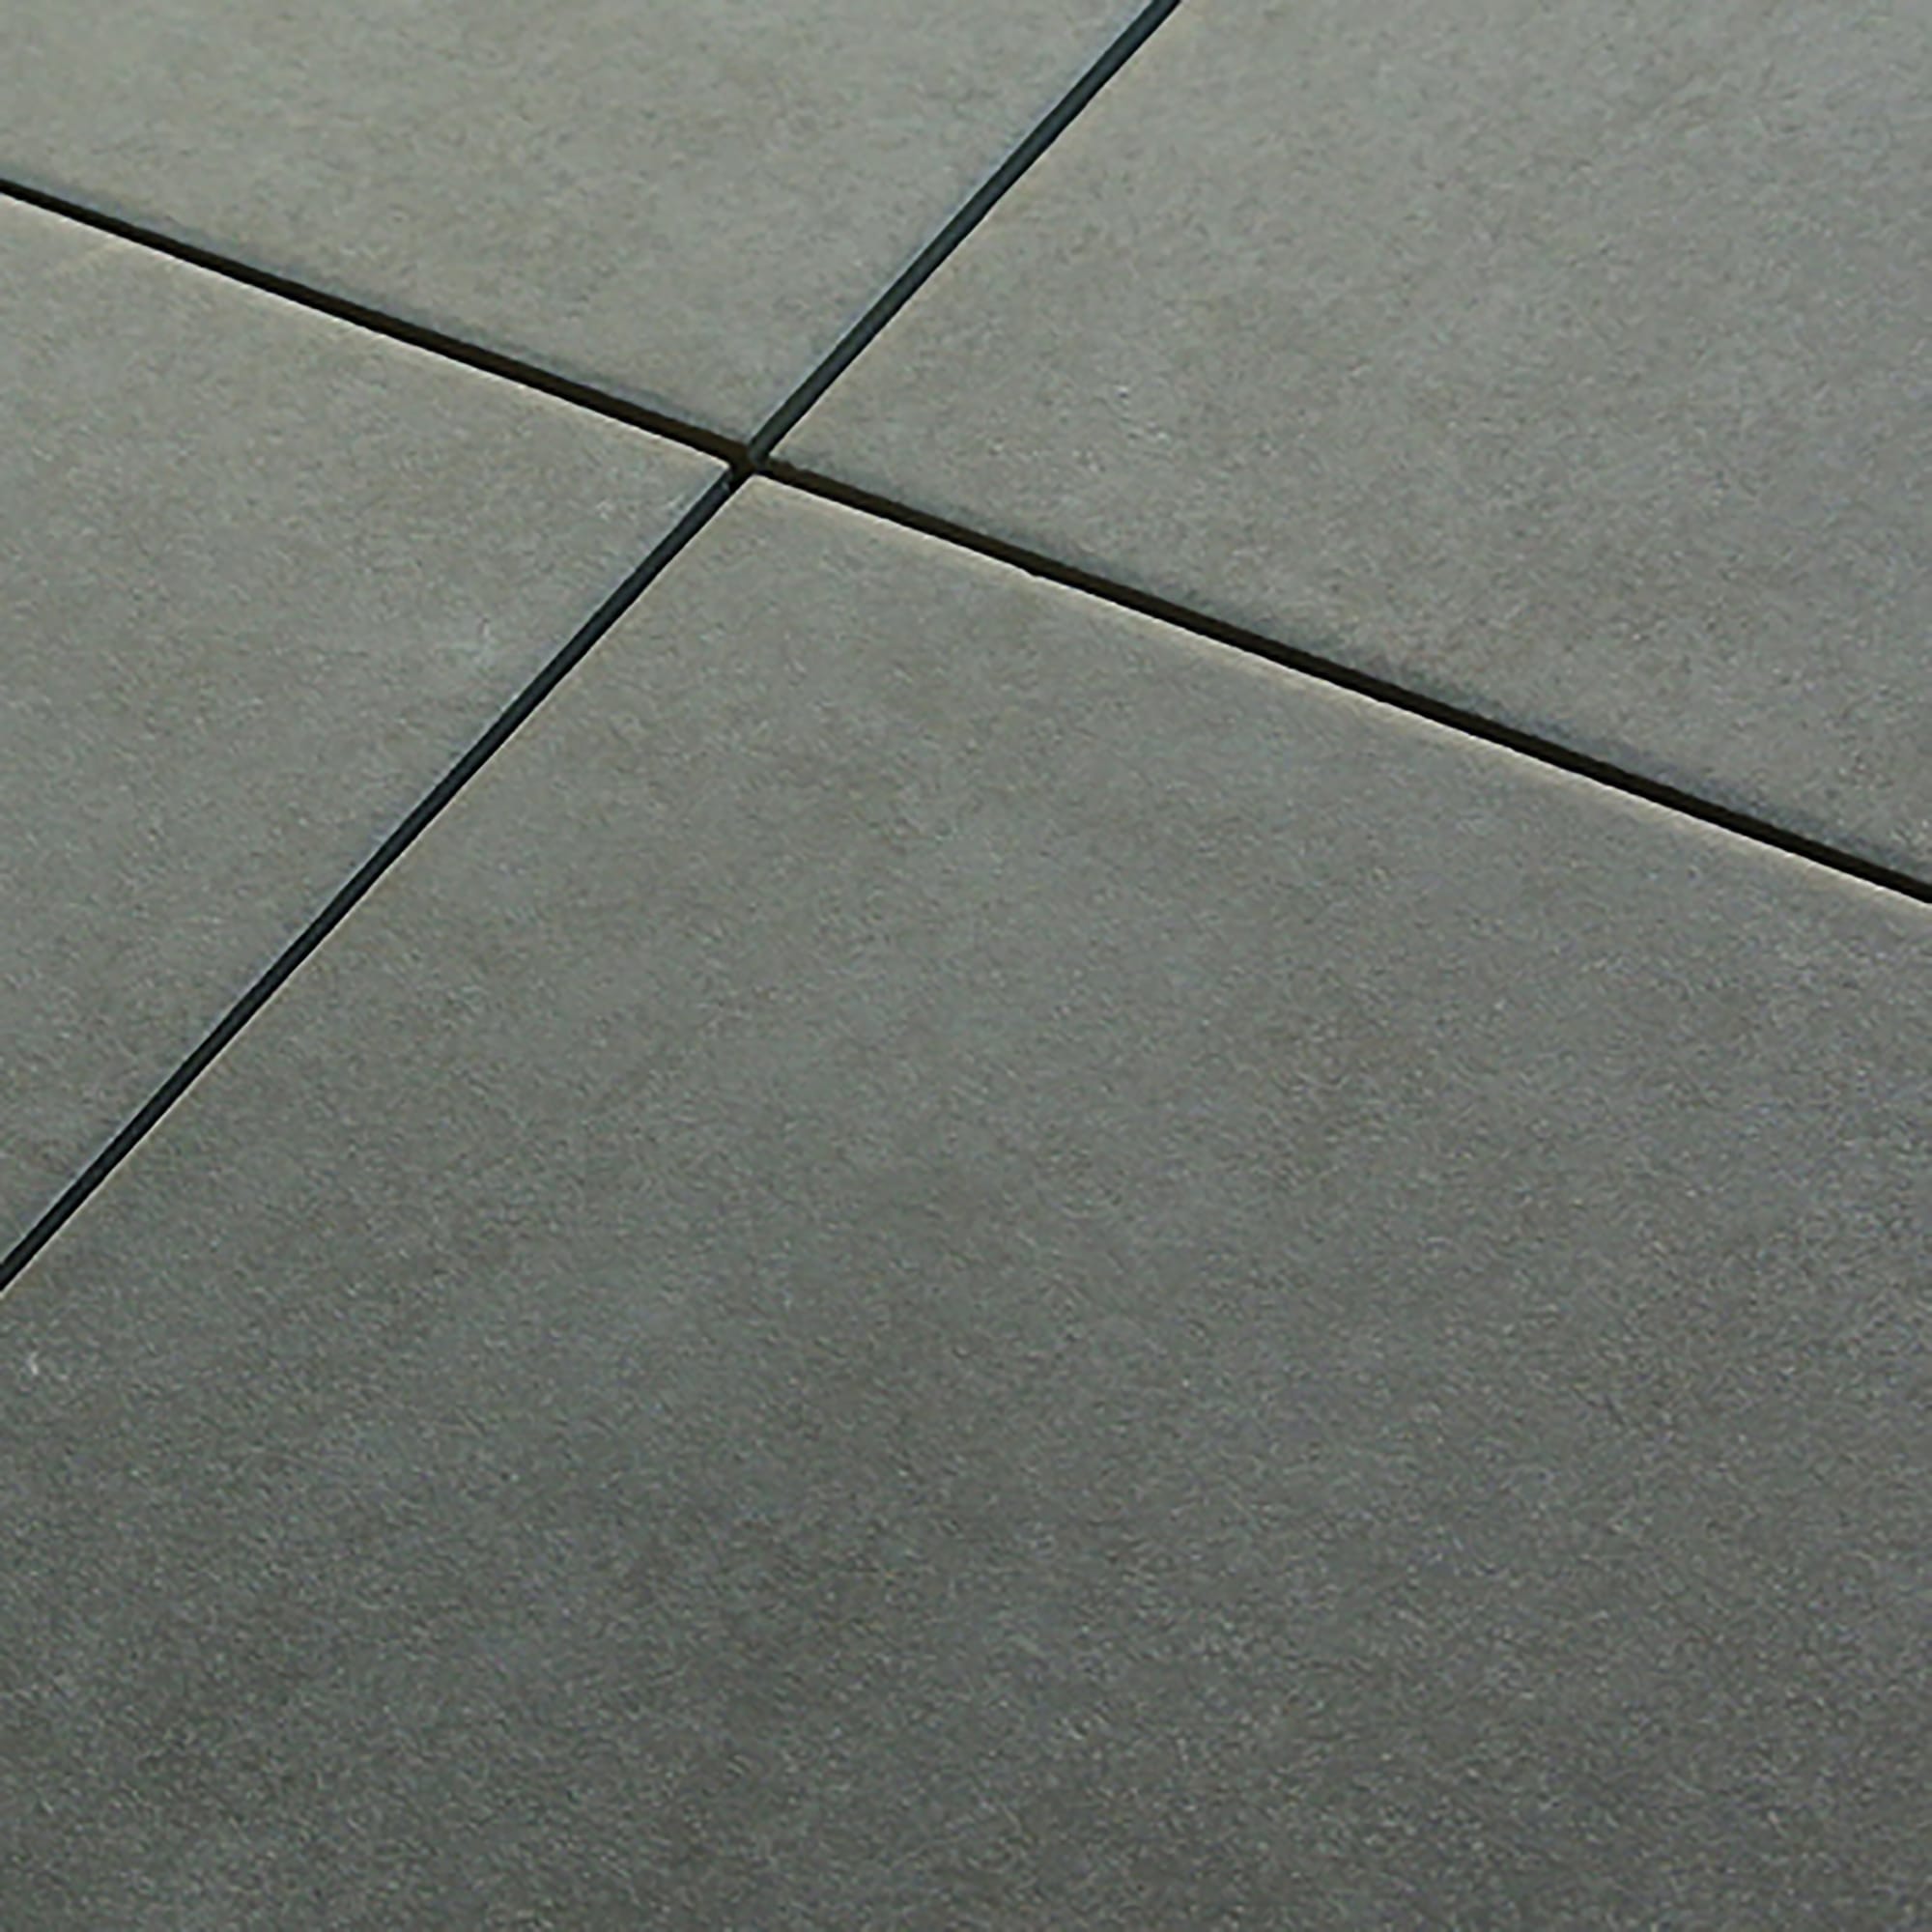 タイル 床 100角 グレー 灰色 モジュール Module Floor Tile 100-No.8 18シート入り 美濃焼 磁器 杉浦製陶 - 2